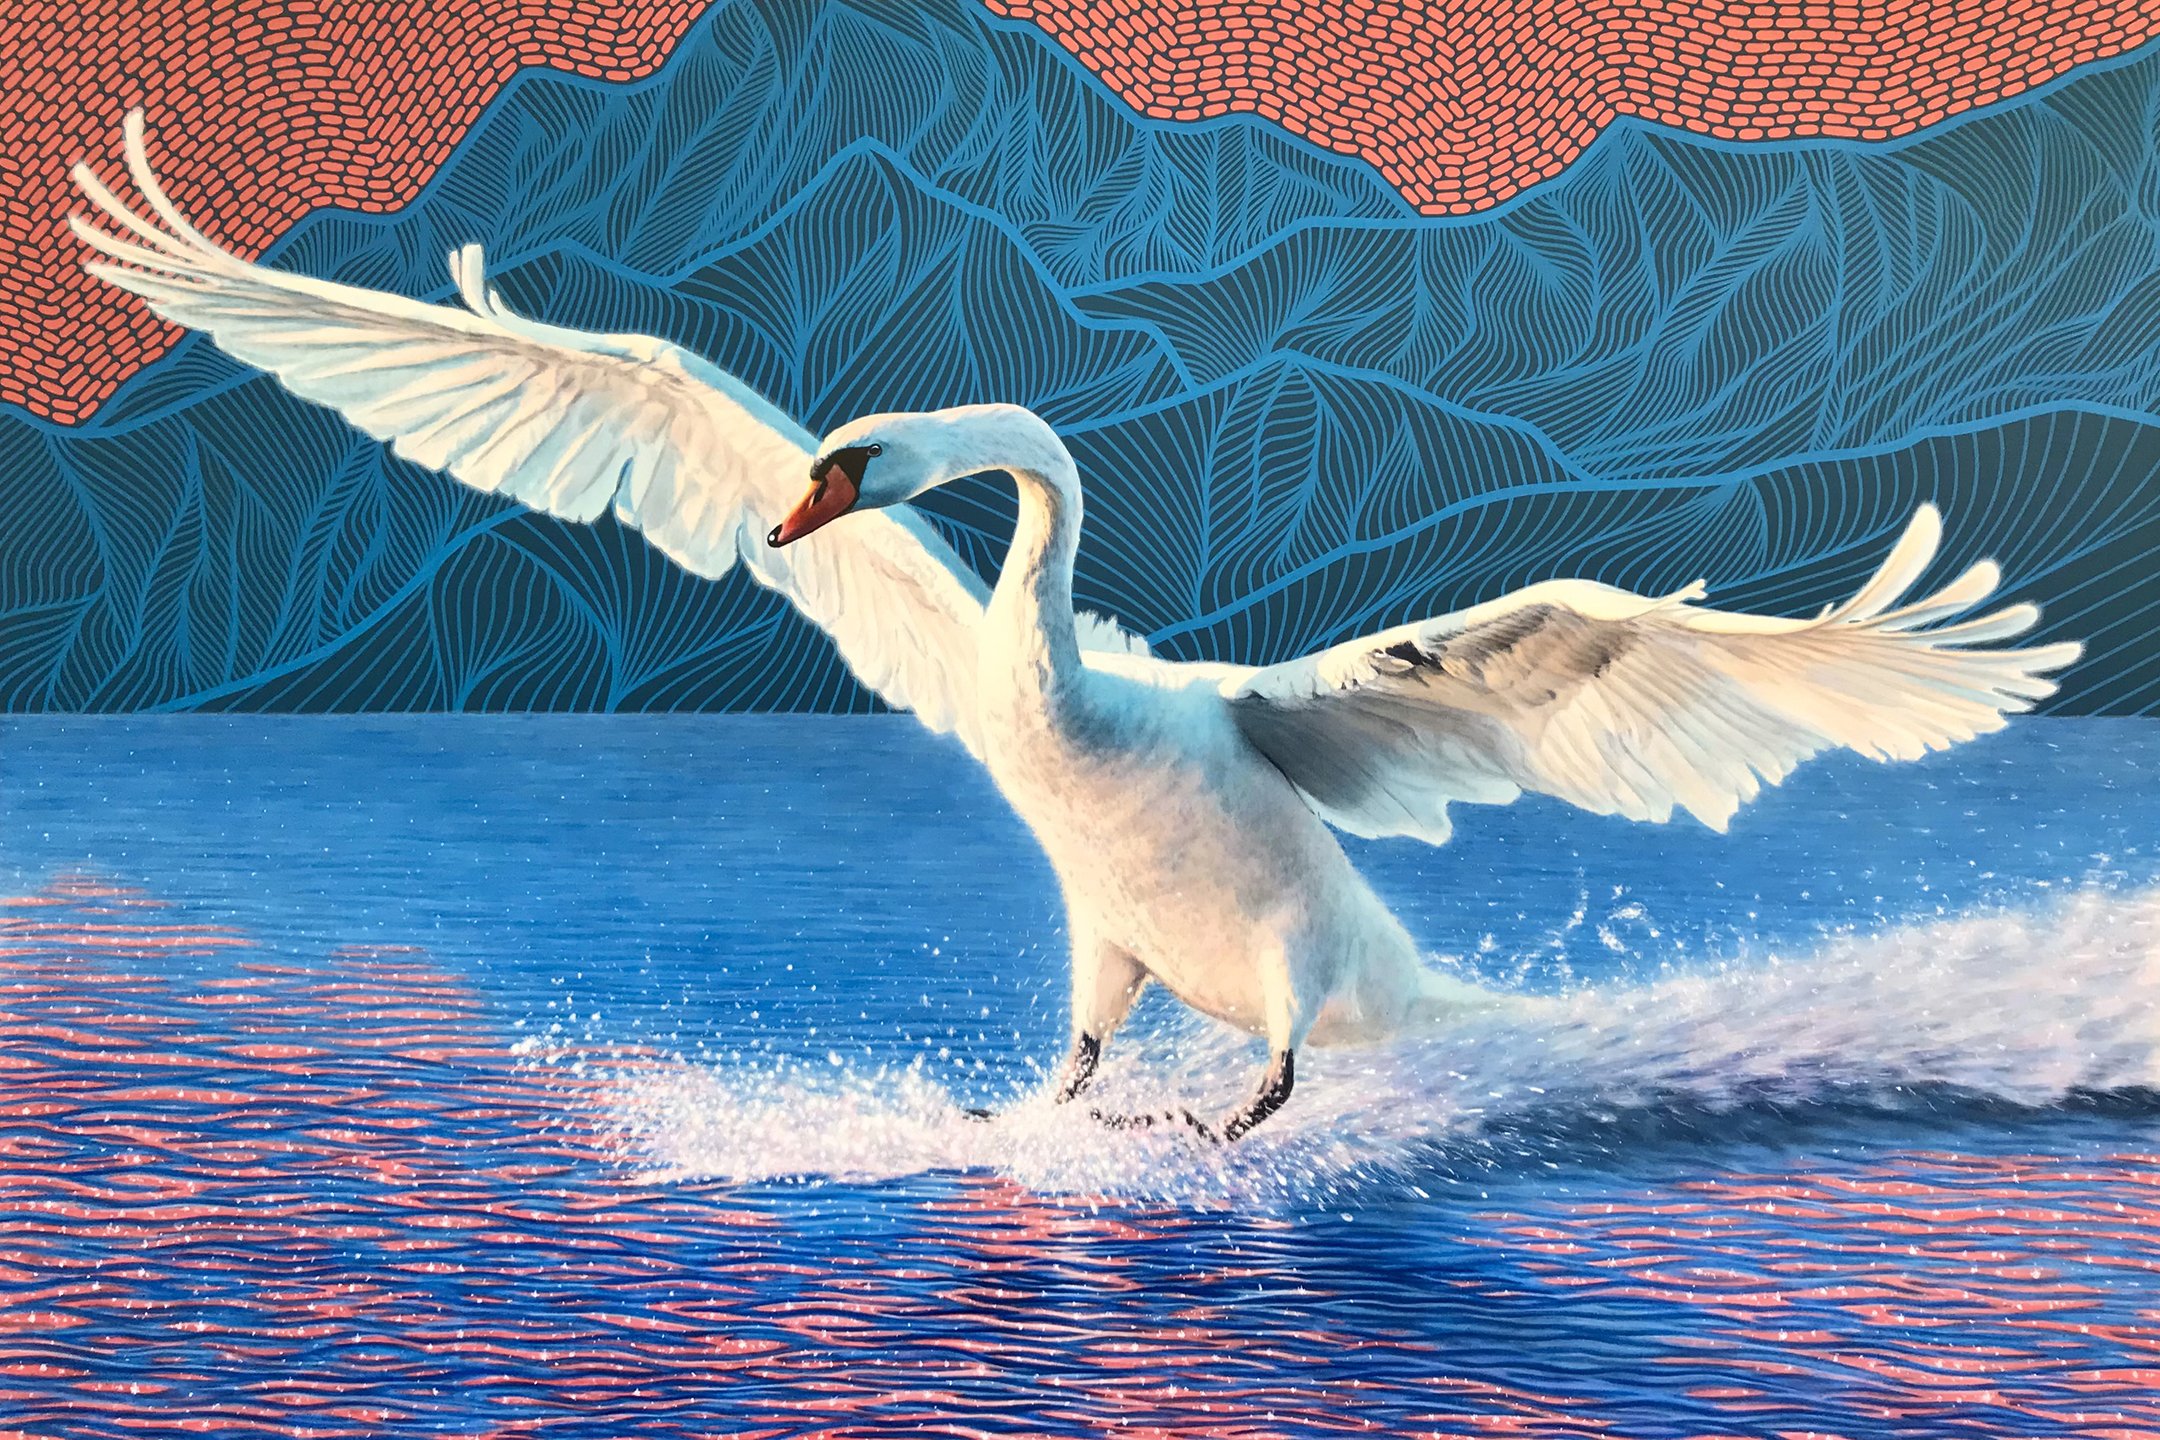 Cygnus, acrylic on canvas, 40"x 60, w/ Regan Johnston, available through Canada House Gallery